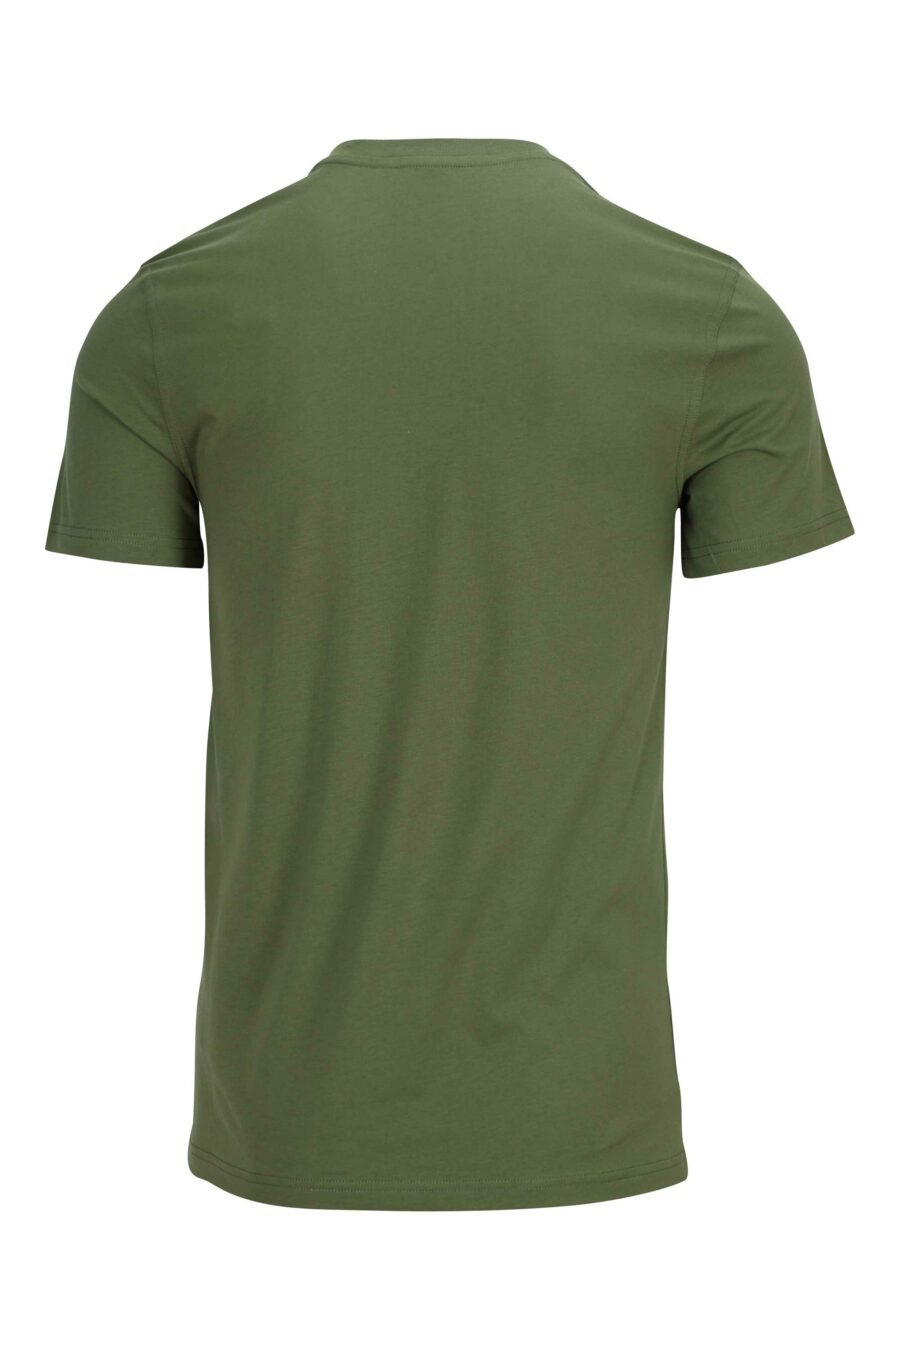 Moschino - Camiseta verde militar de algodón ecológico con maxilogo ...